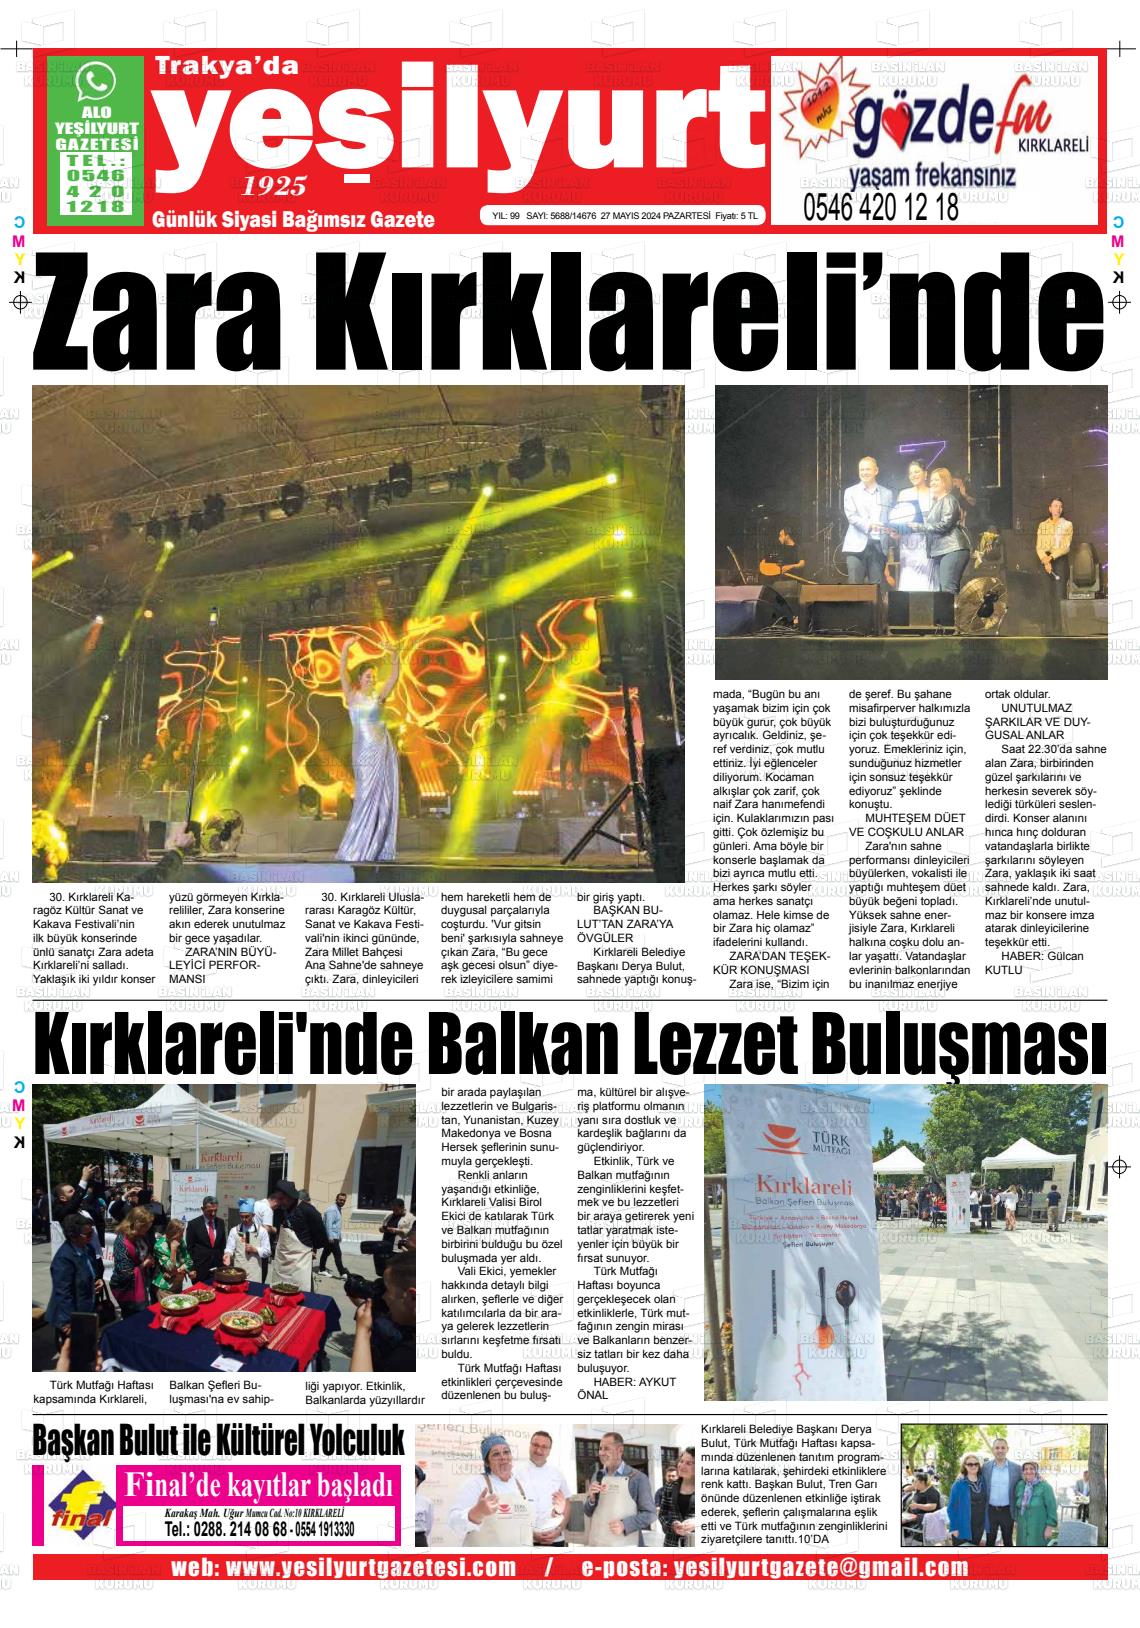 TRAKYA'DA YEŞİLYURT Gazetesi